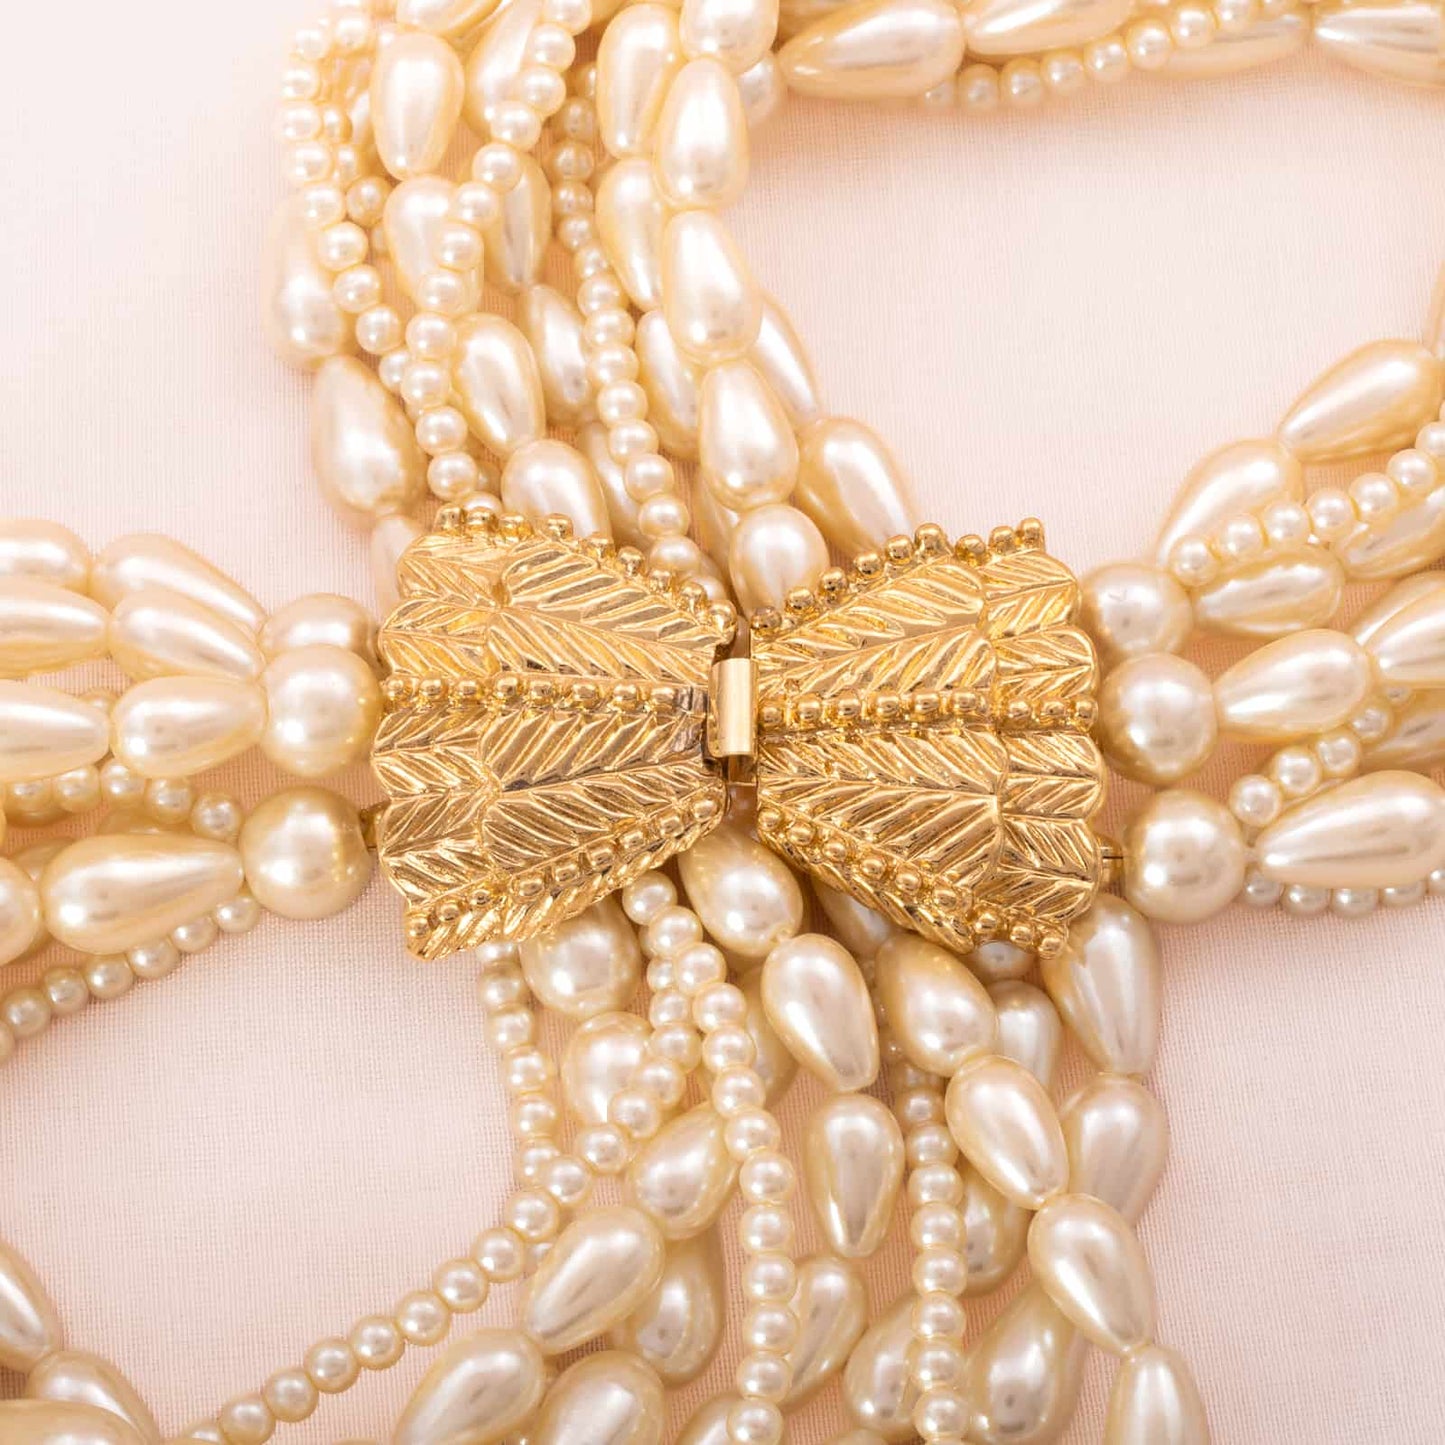 Carolee-zehnreihige-Windsor-Perlenkette-Schleifen-Verschluss-70er-Jahre